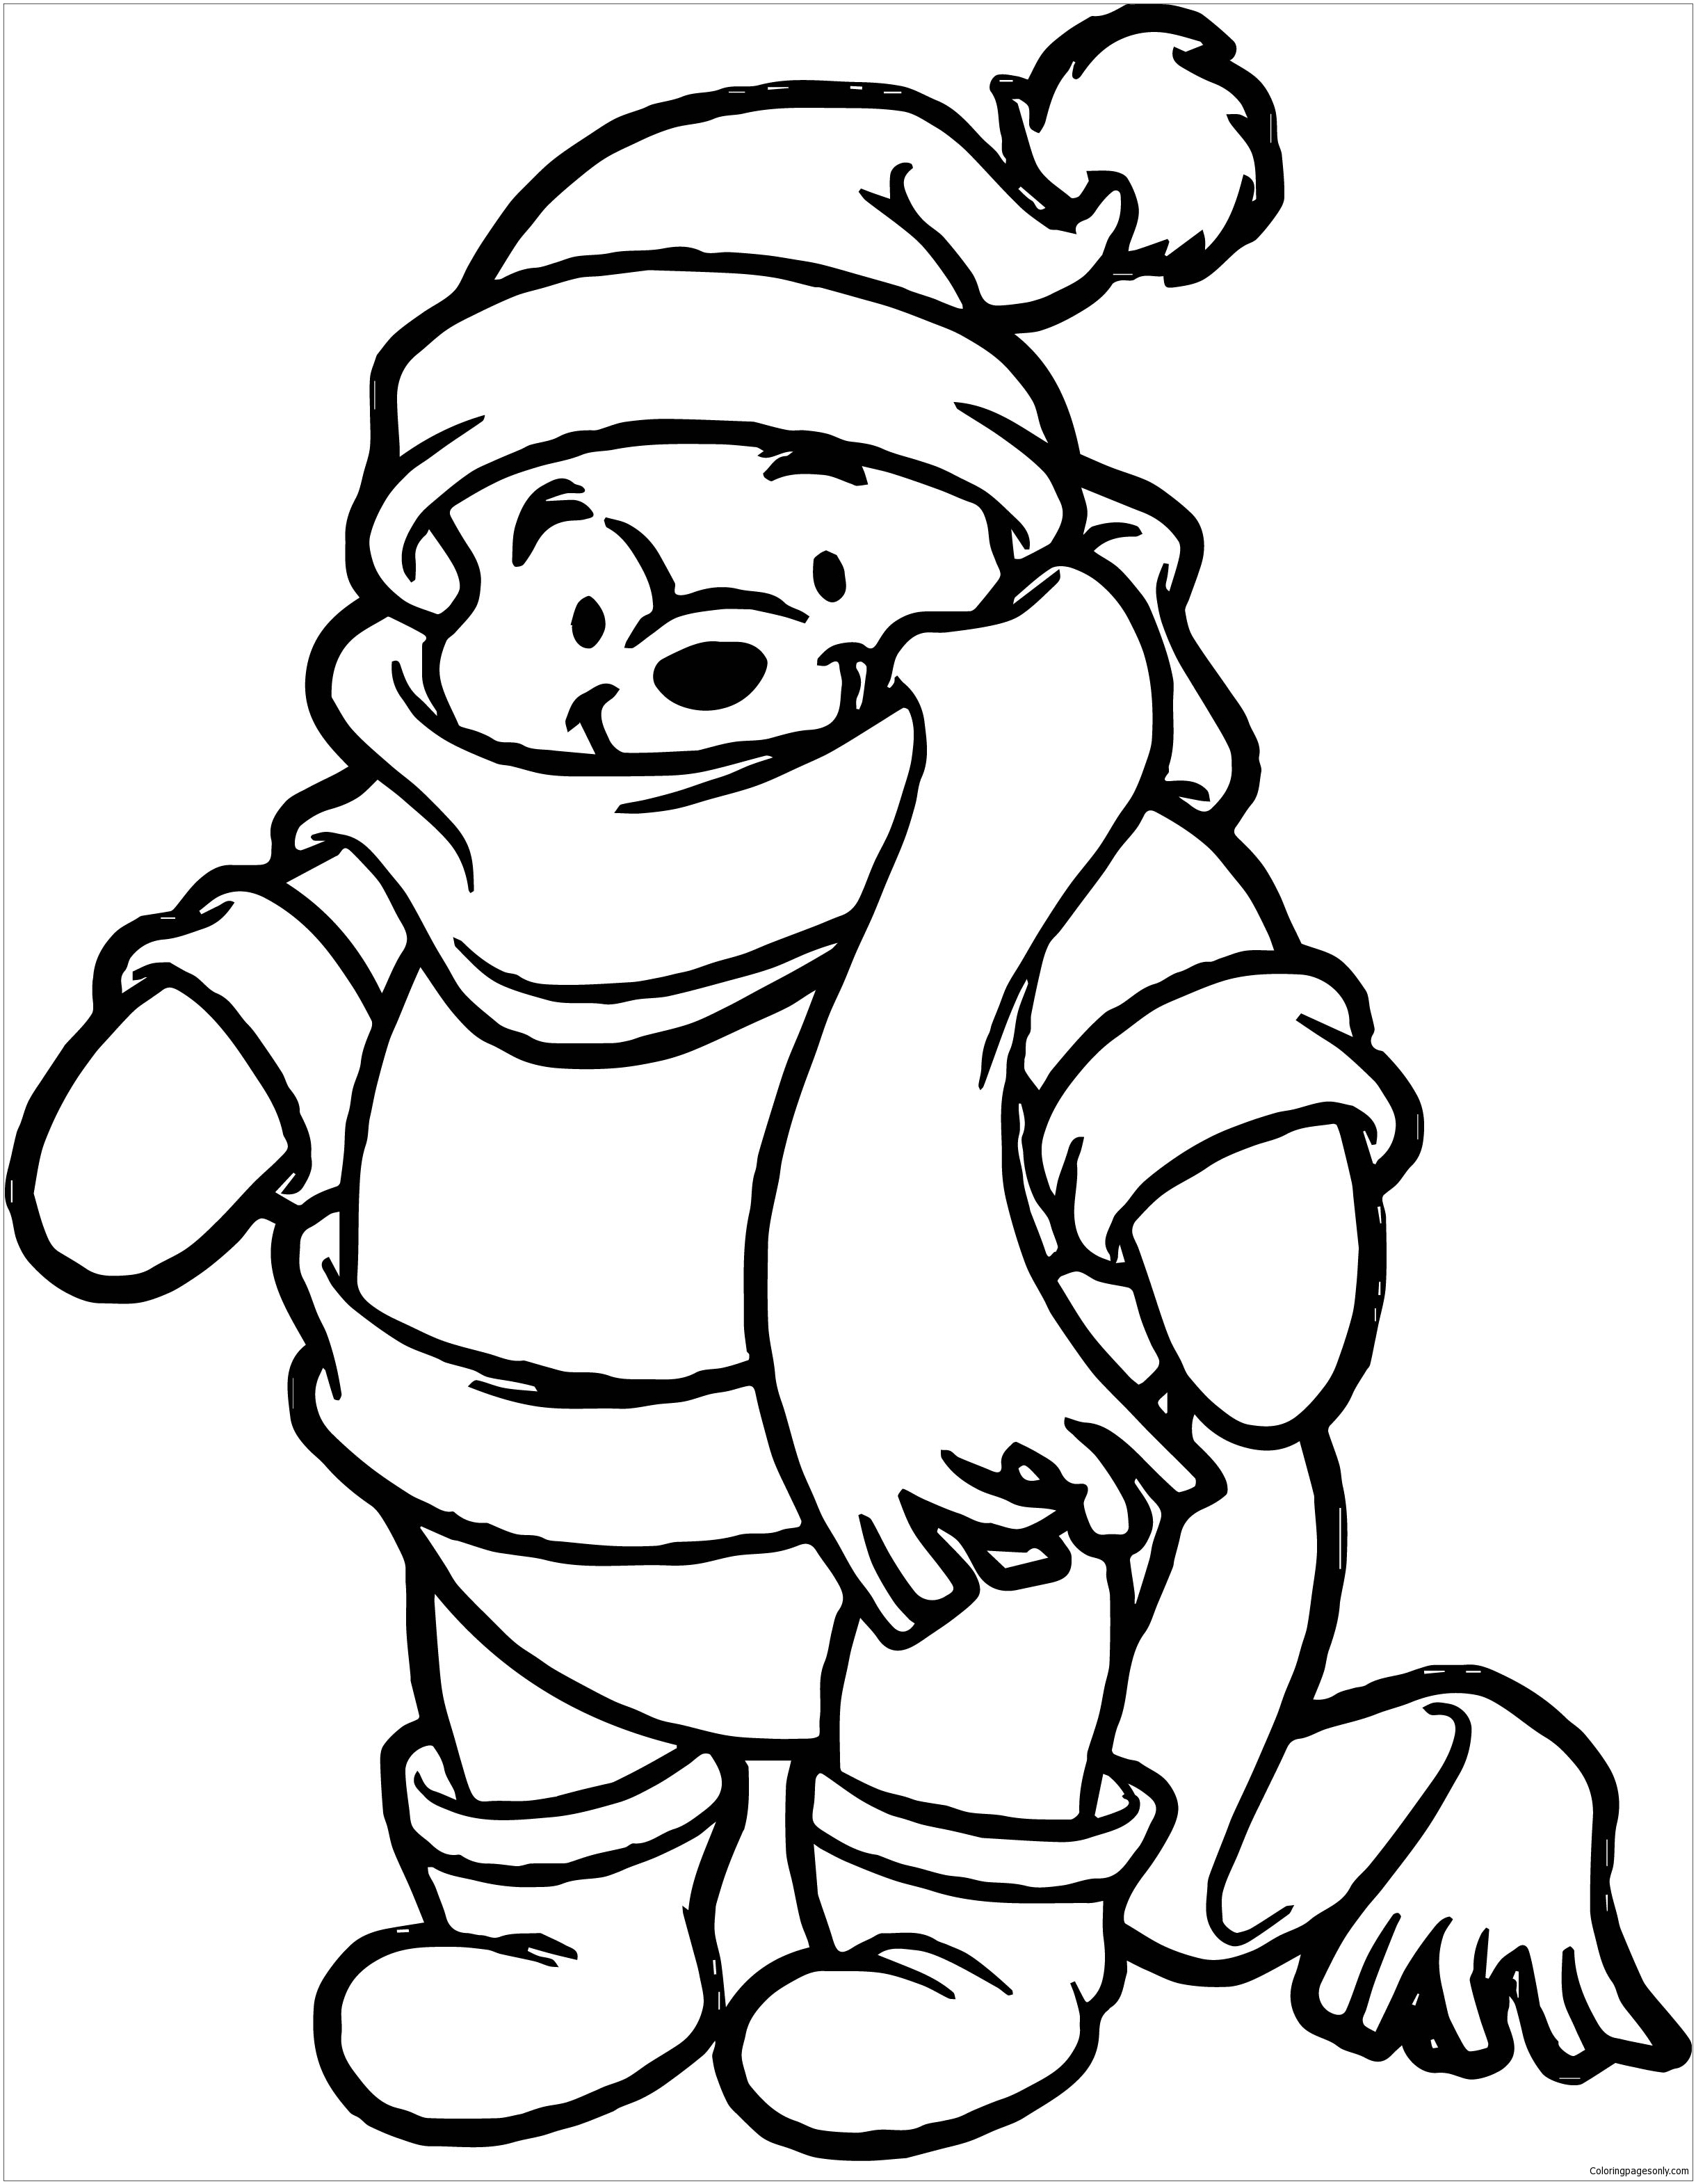 Desenho para colorir de inverno do Ursinho Pooh